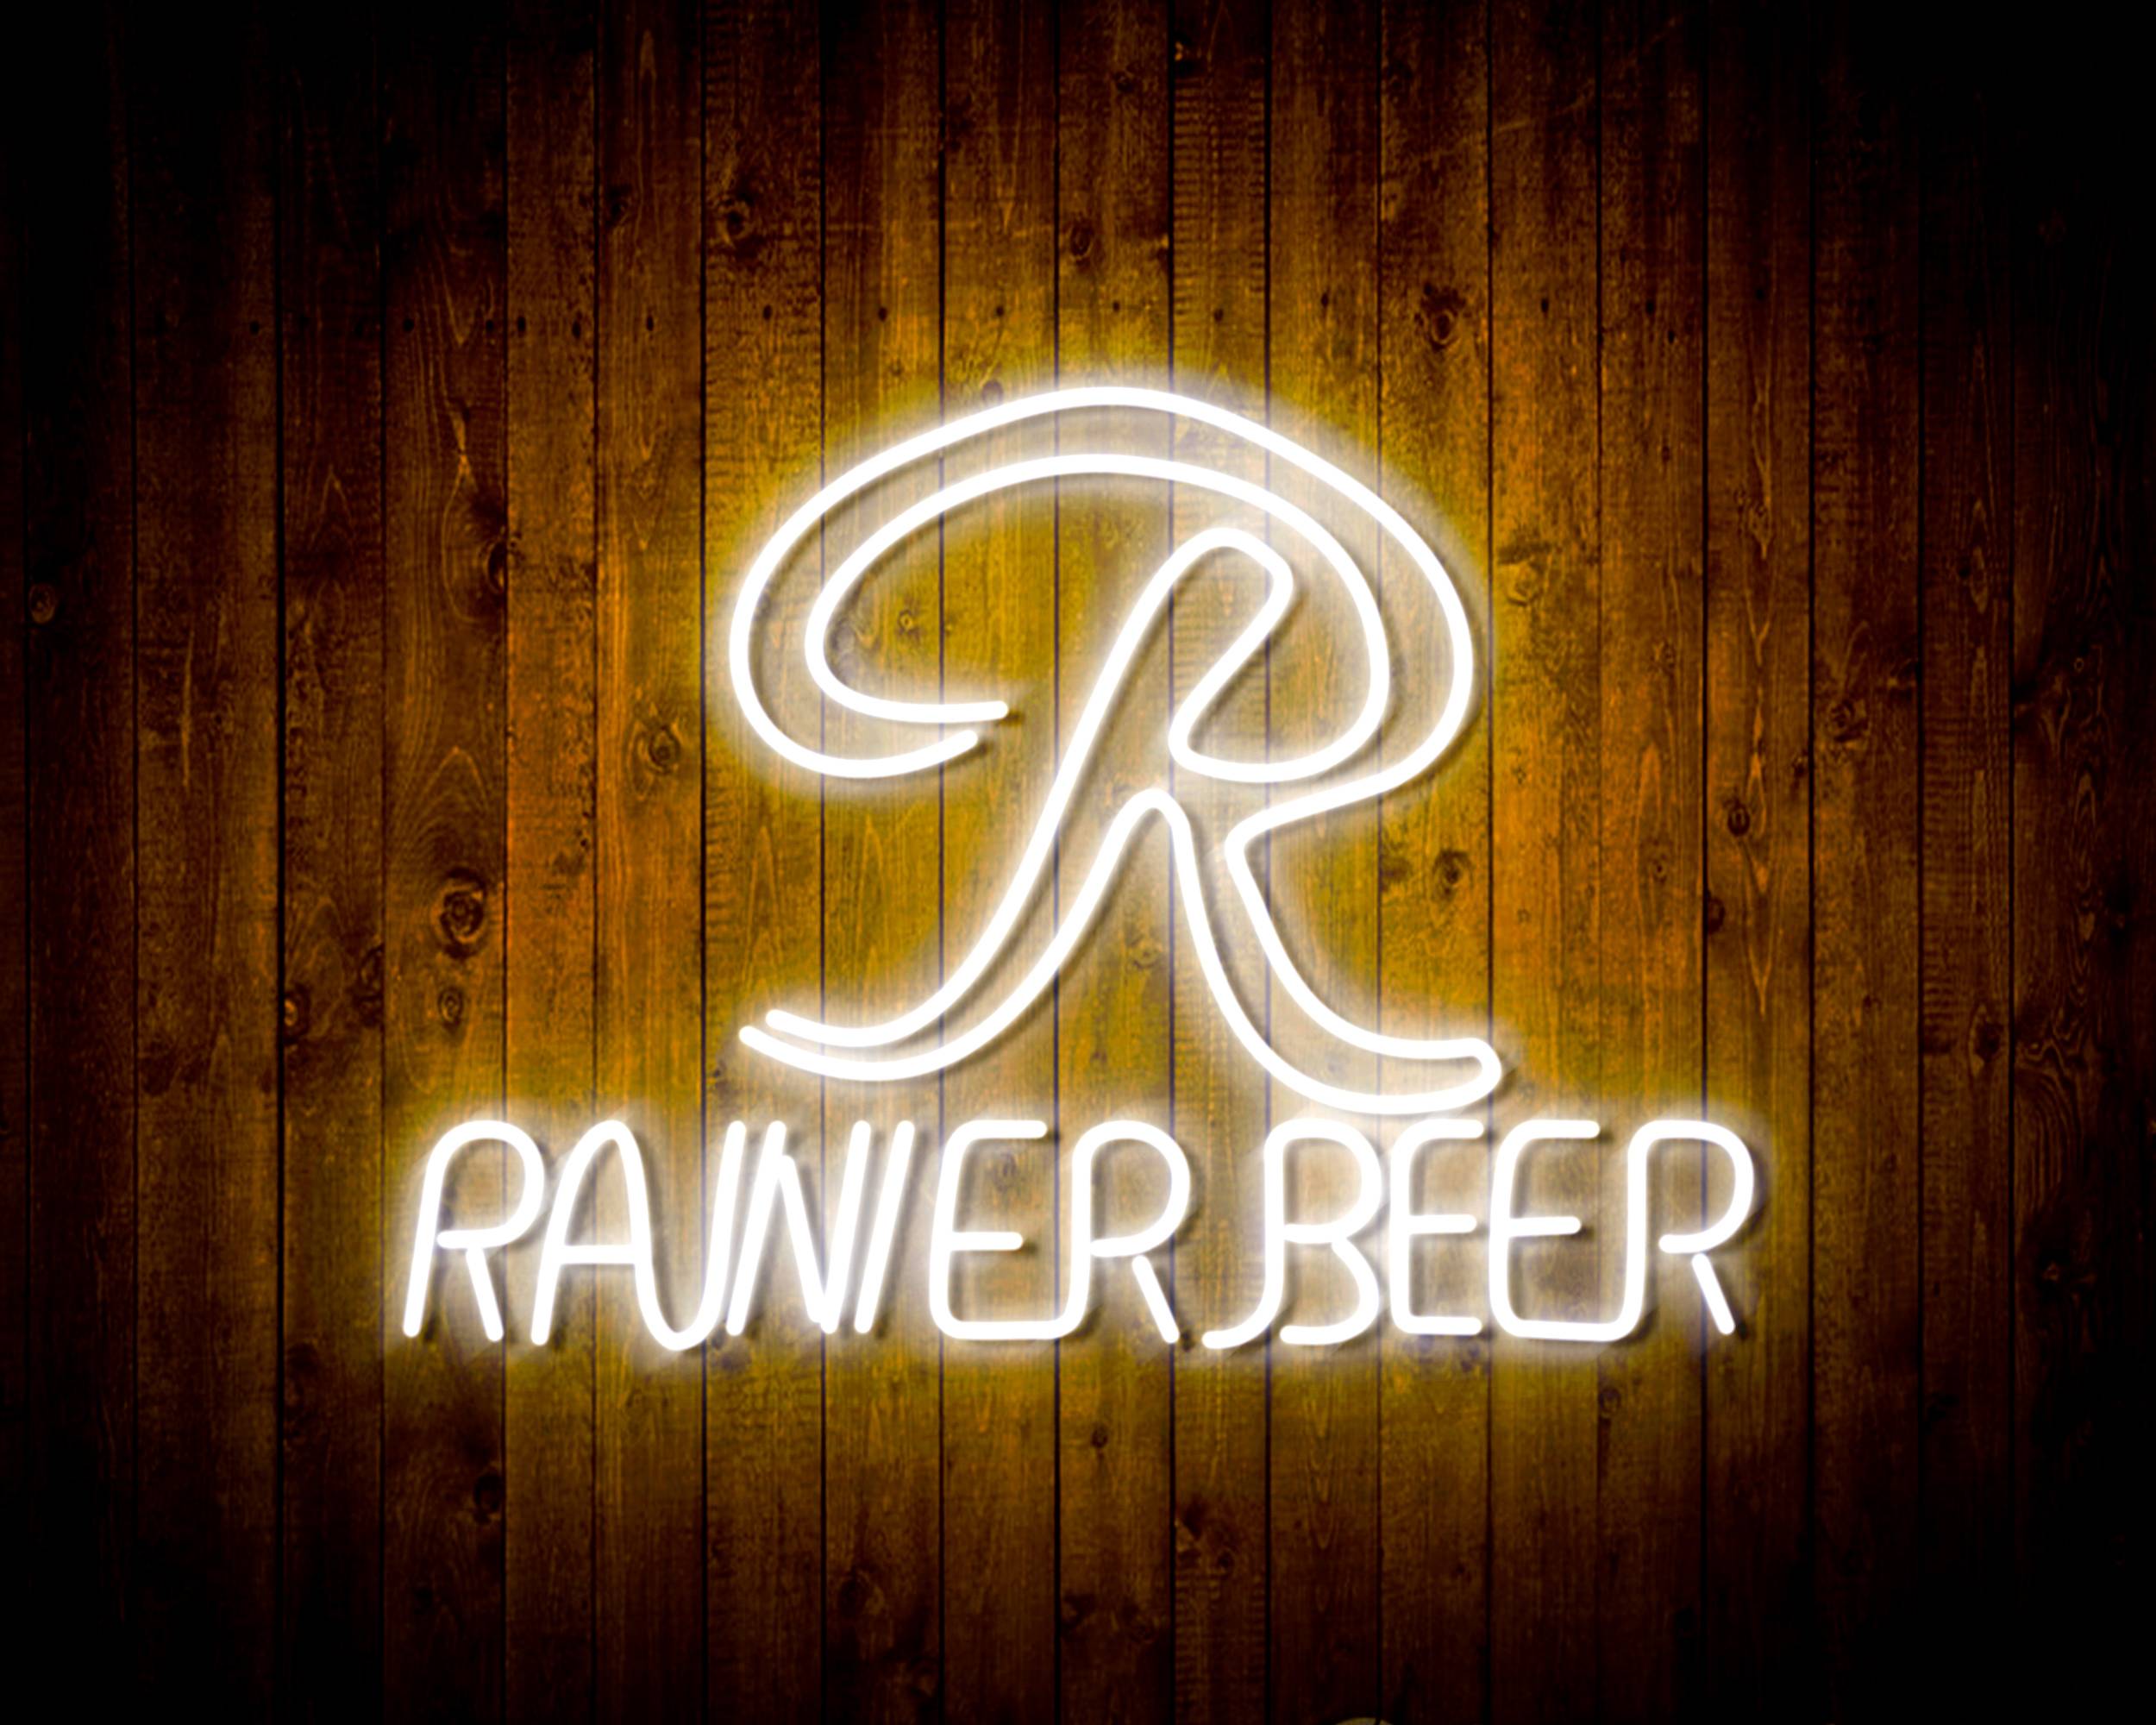 Rainier Beer Handmade Neon Flex LED Sign